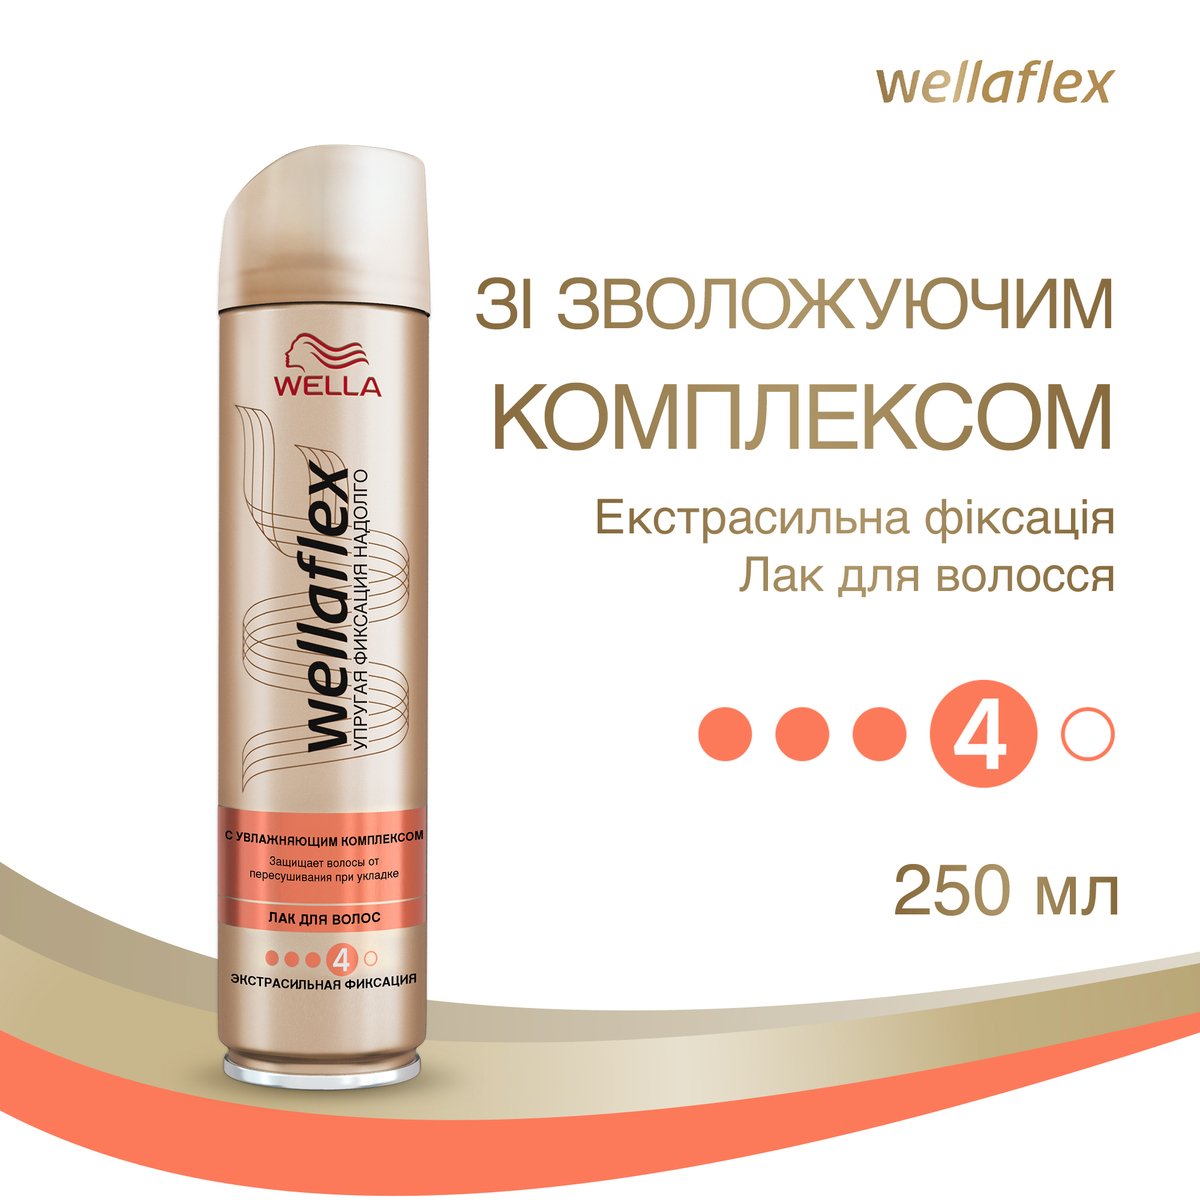 Лак для волосся Wellaflex зі зволожуючим комплексом, екстра сильна фіксація, 250 мл - фото 2